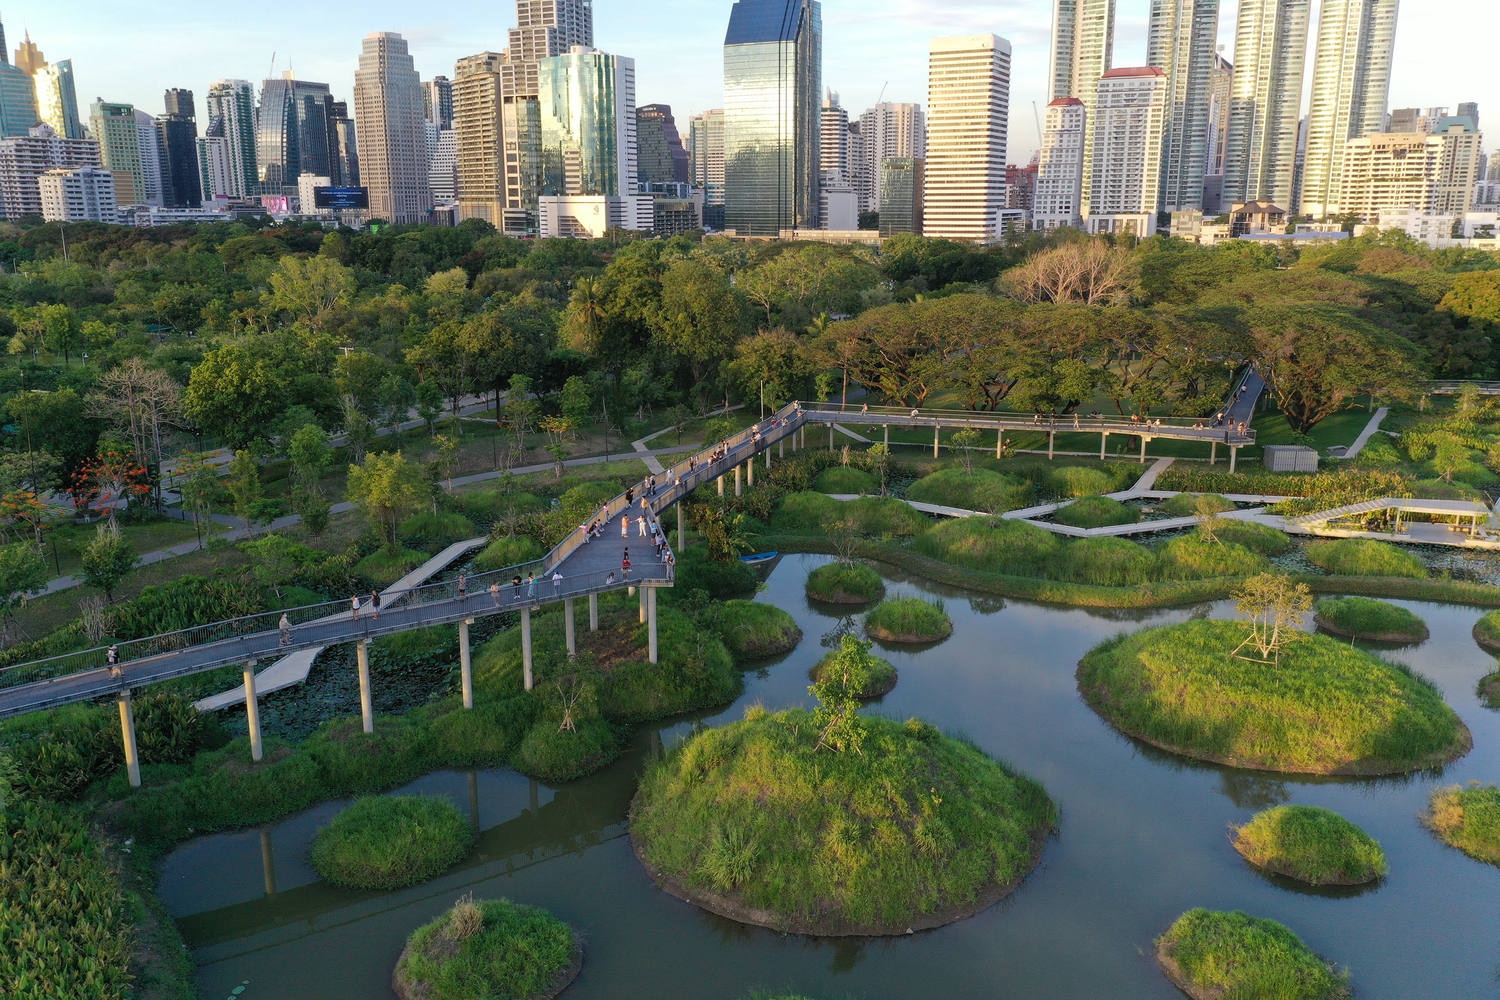 Ландшафтный архитектор Конджян Ю, пионер концепции «Города губок», получил премию Оберлендера 2023 года